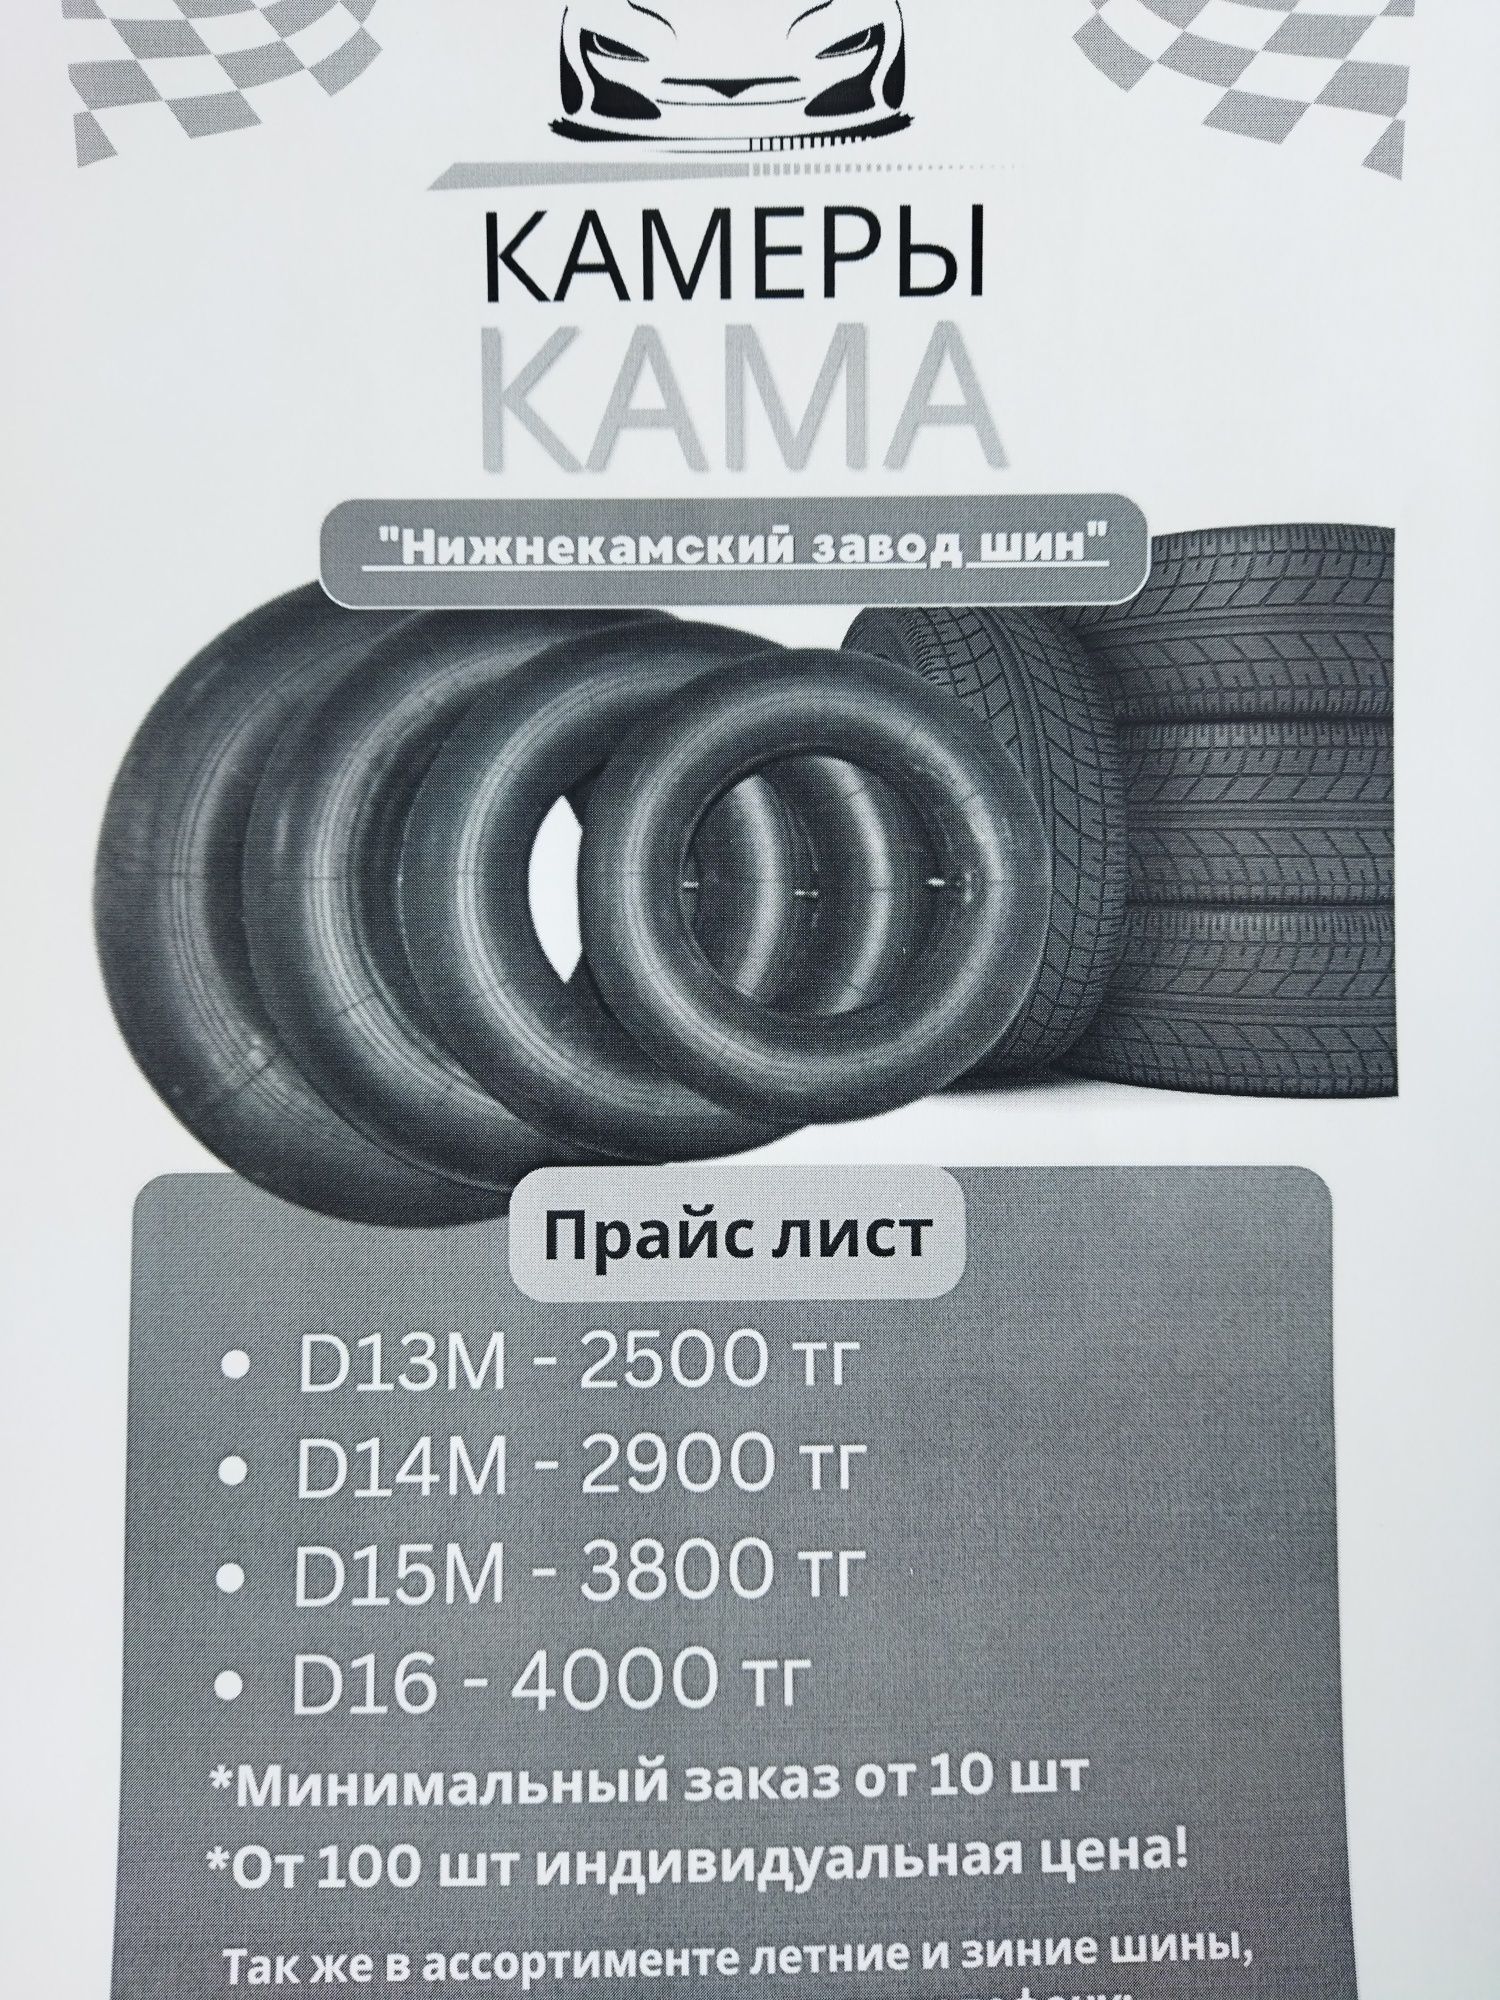 Камера на шины автомобиля оптом  r13;14;15;16 размер широкий Россия